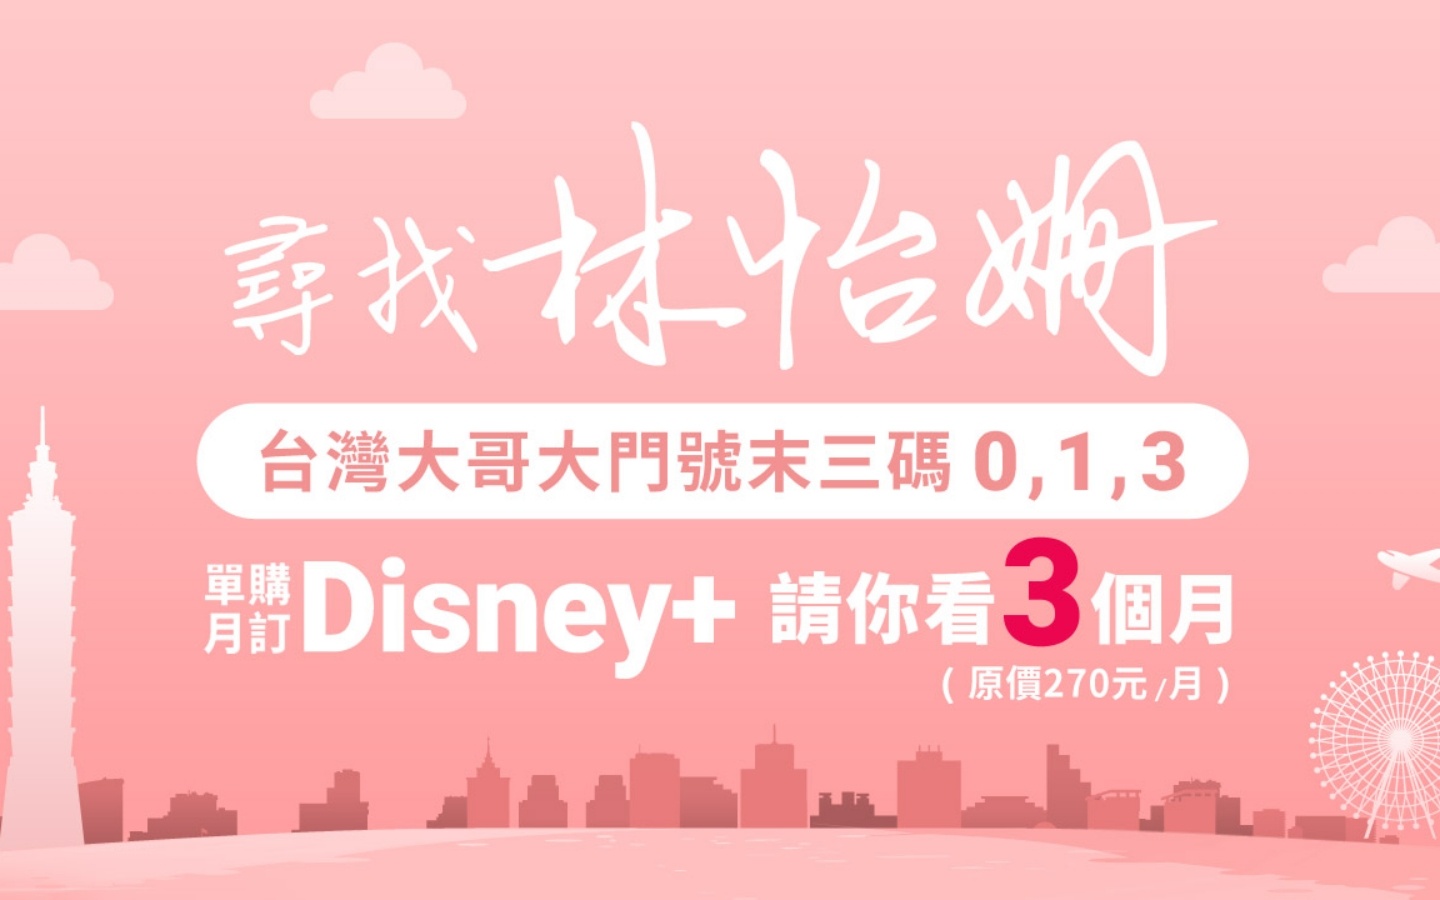 台哥大跟上《台北女子圖鑑》風潮！門號末三碼有 0、1、3 可免費訂閱 Disney+ 三個月，如何申請？